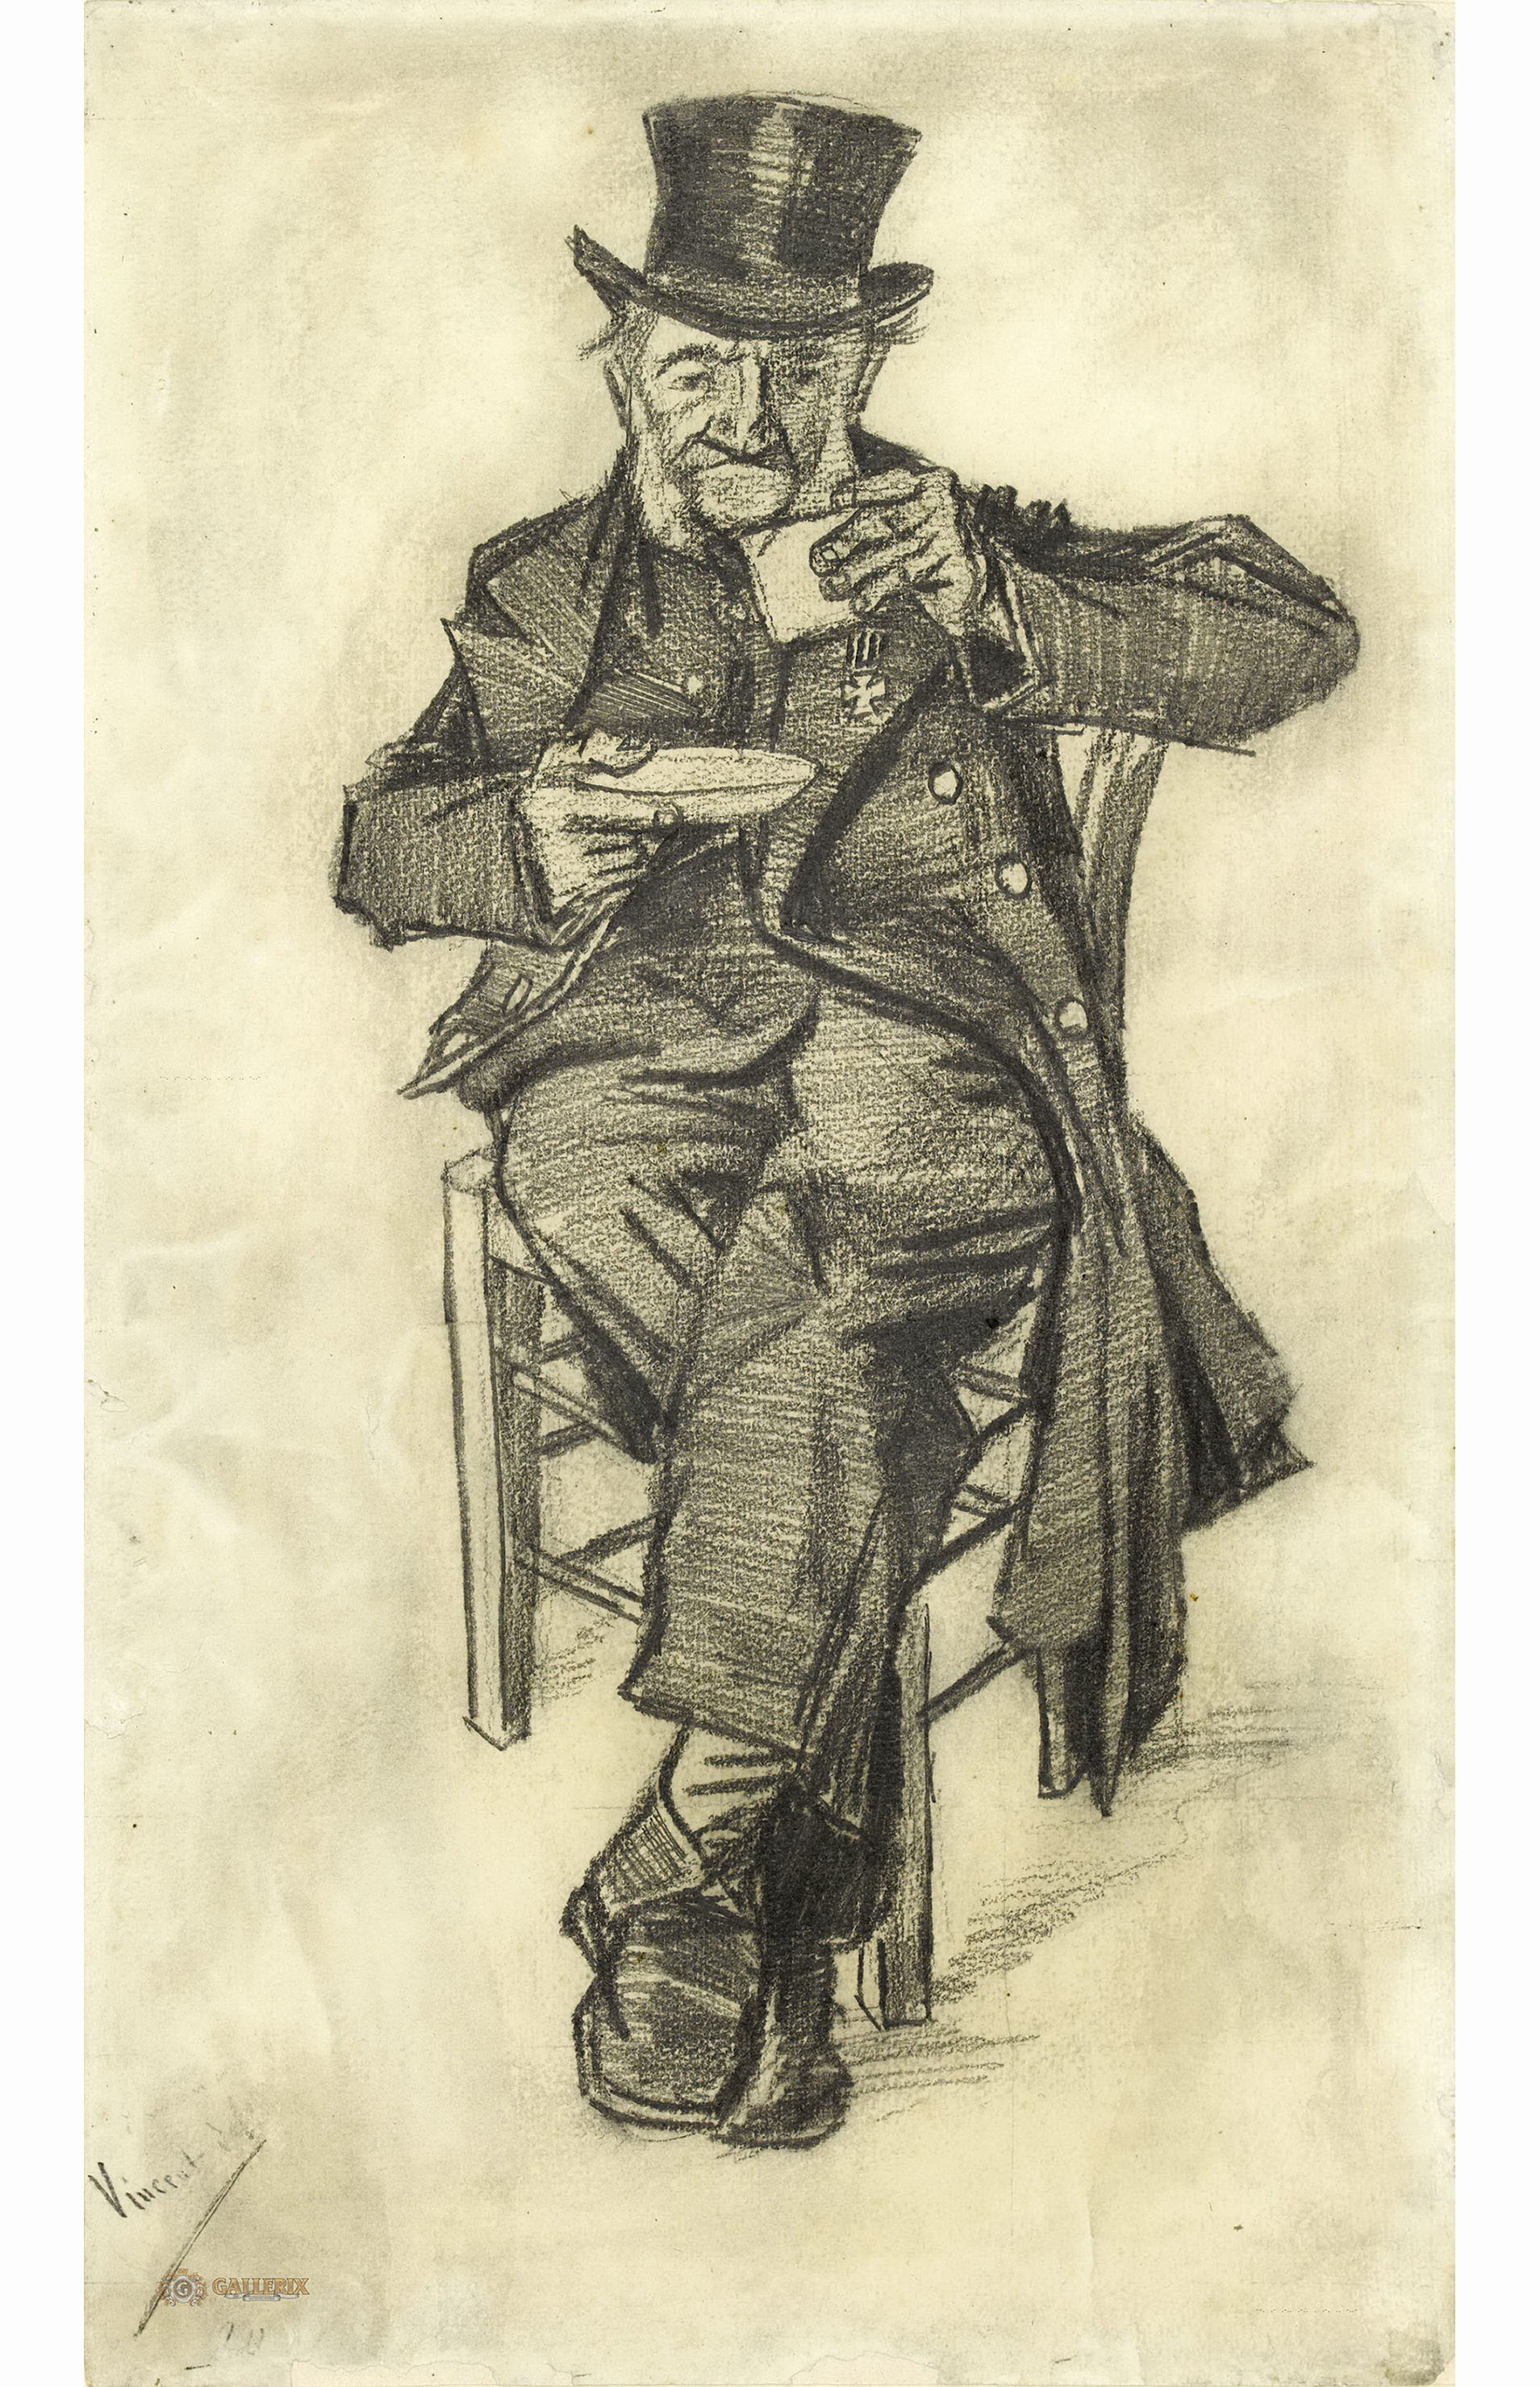 Винсент Ван Гог. "Пожилой мужчина в цилиндре, пьющий кофе". 1882. Музей Ван Гога, Амстердам.